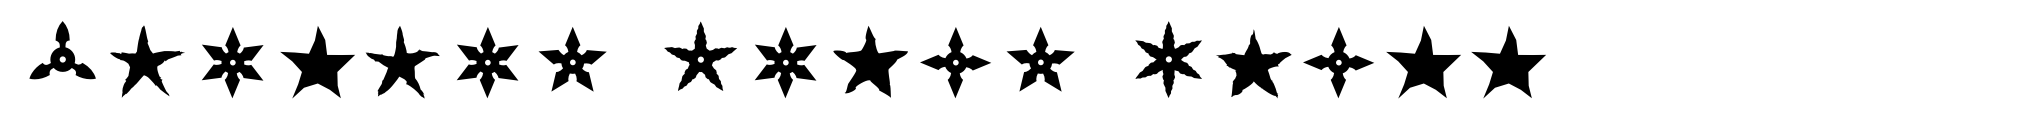 Altemus Stars Three image